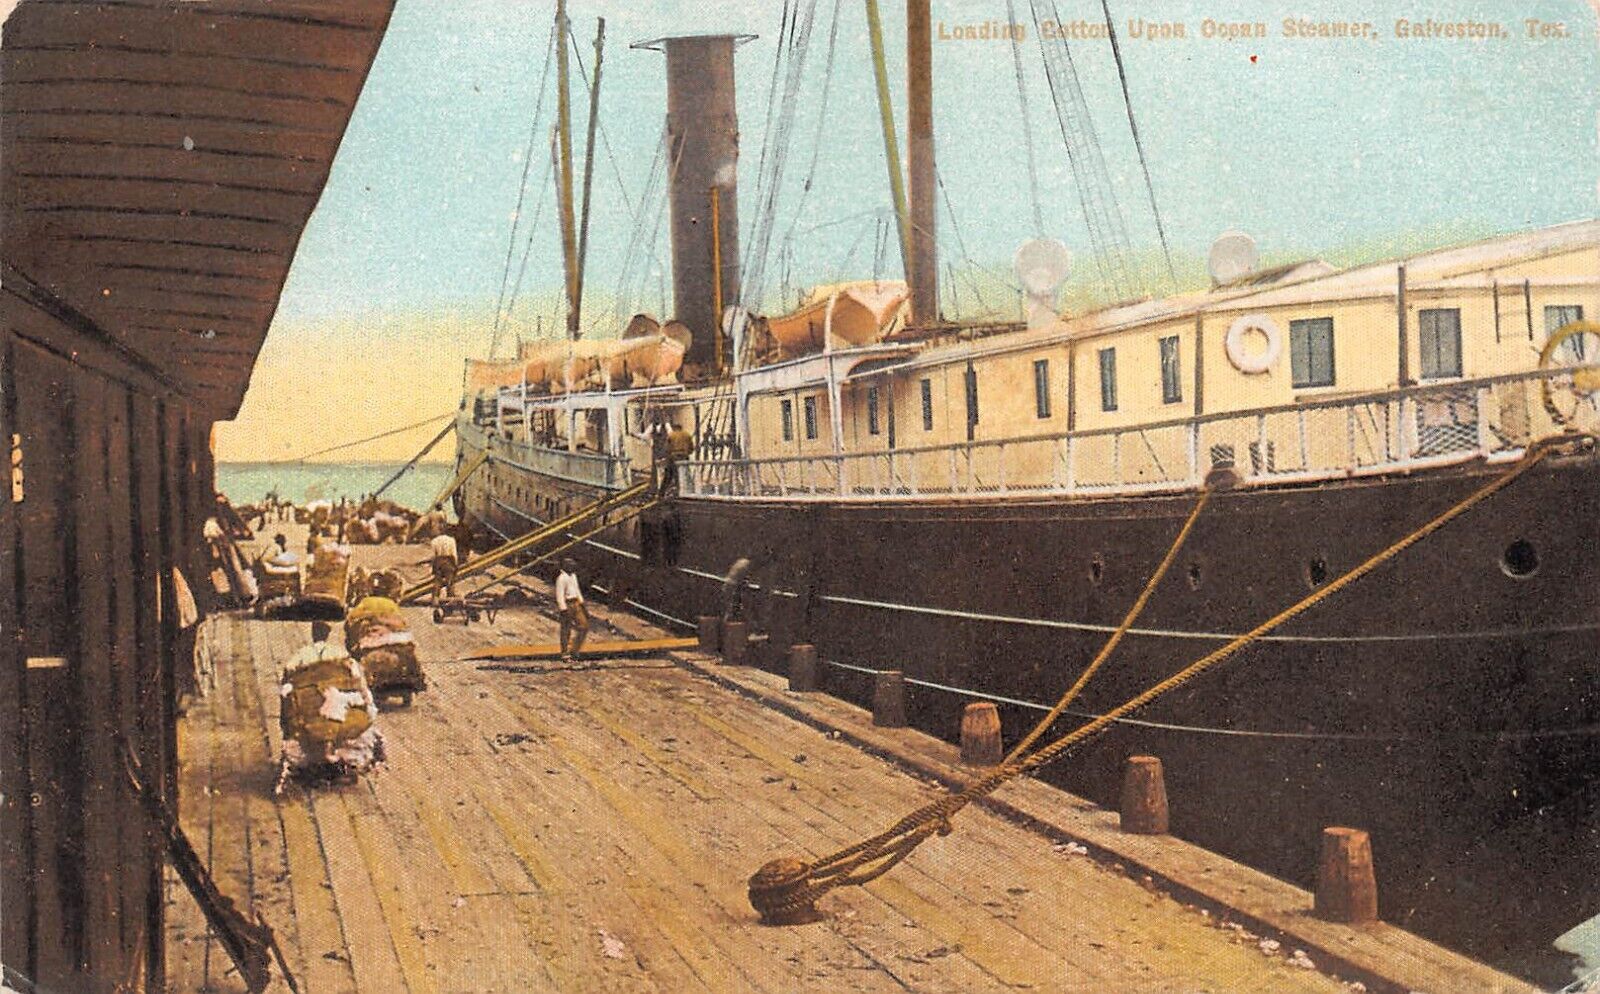 Loading Cotton Upon Ocean Steamer Galveston TX Texas 1912 Postcard 4266